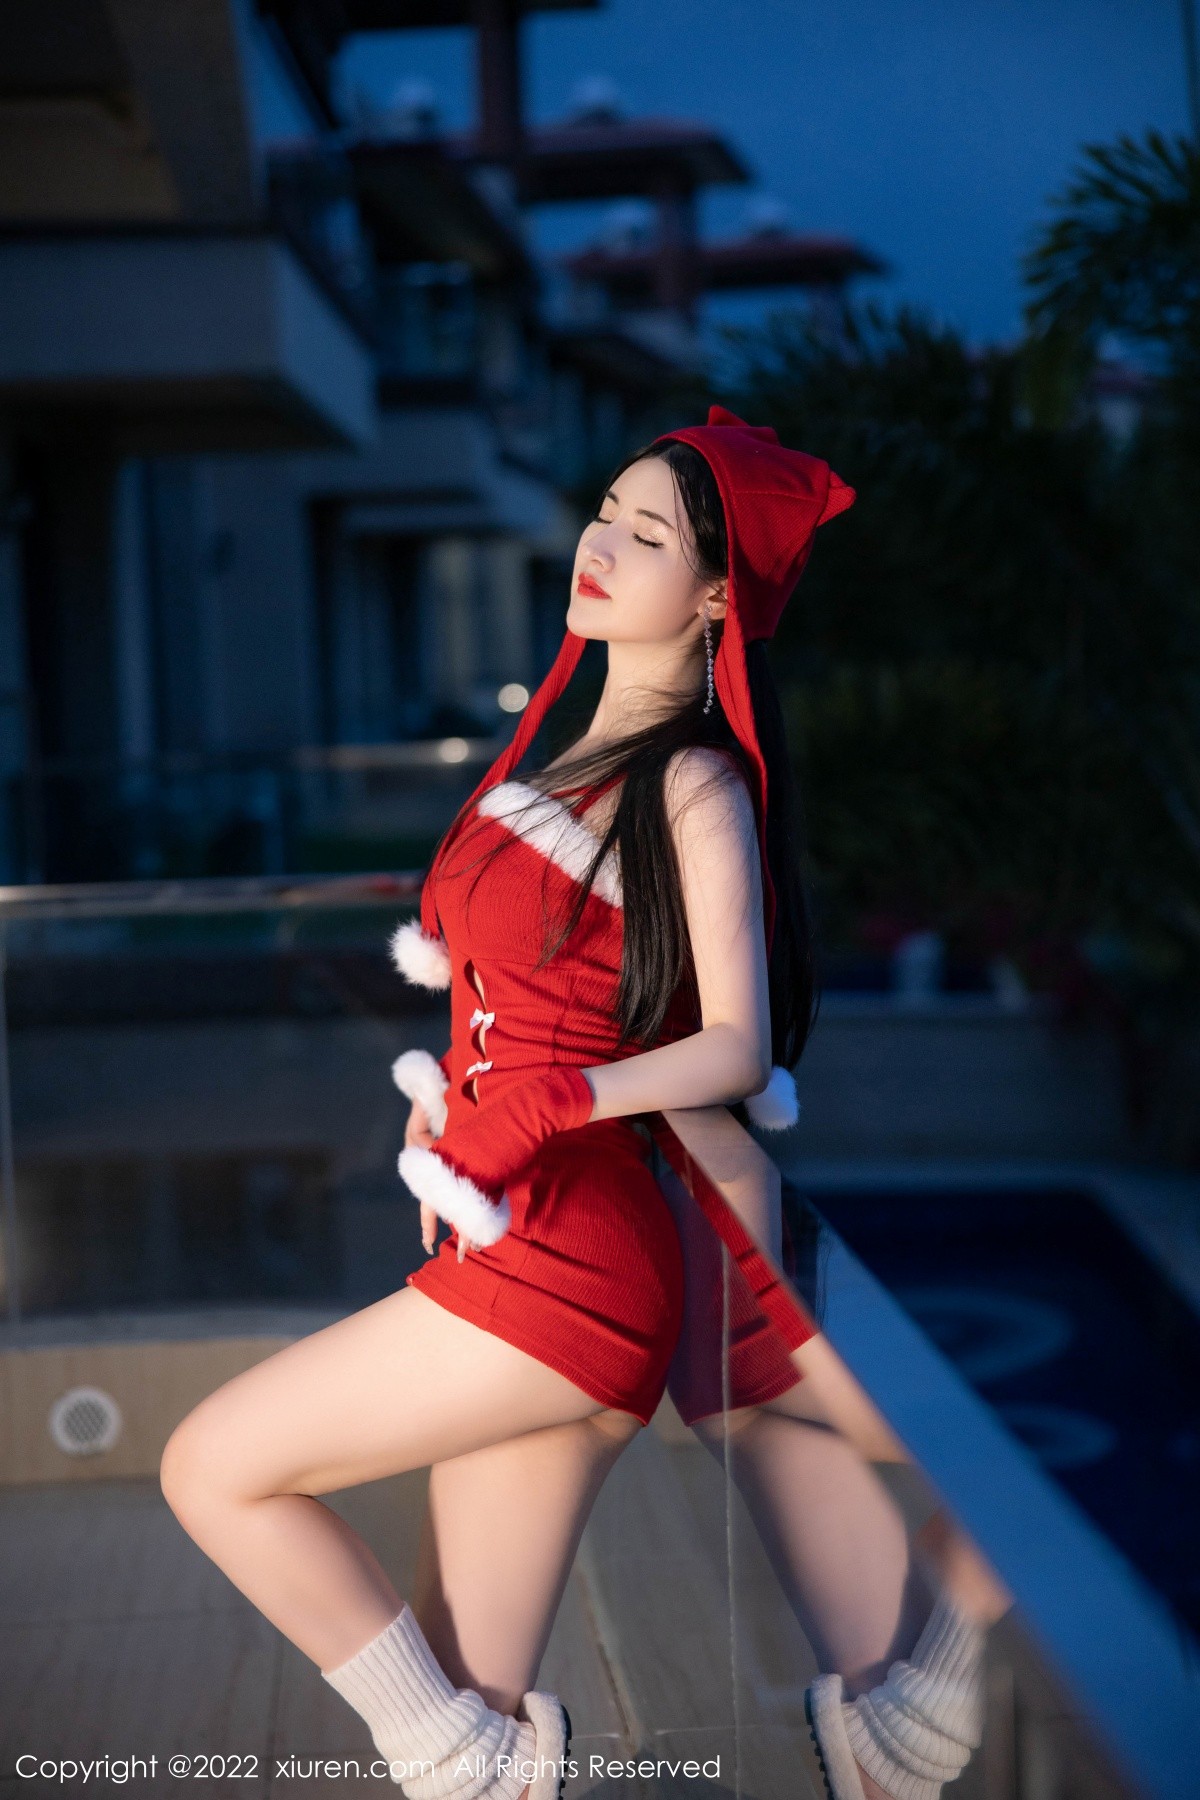 模特诗诗kiki新年气氛拍摄私房性感红色内衣秀完美身材诱惑写真